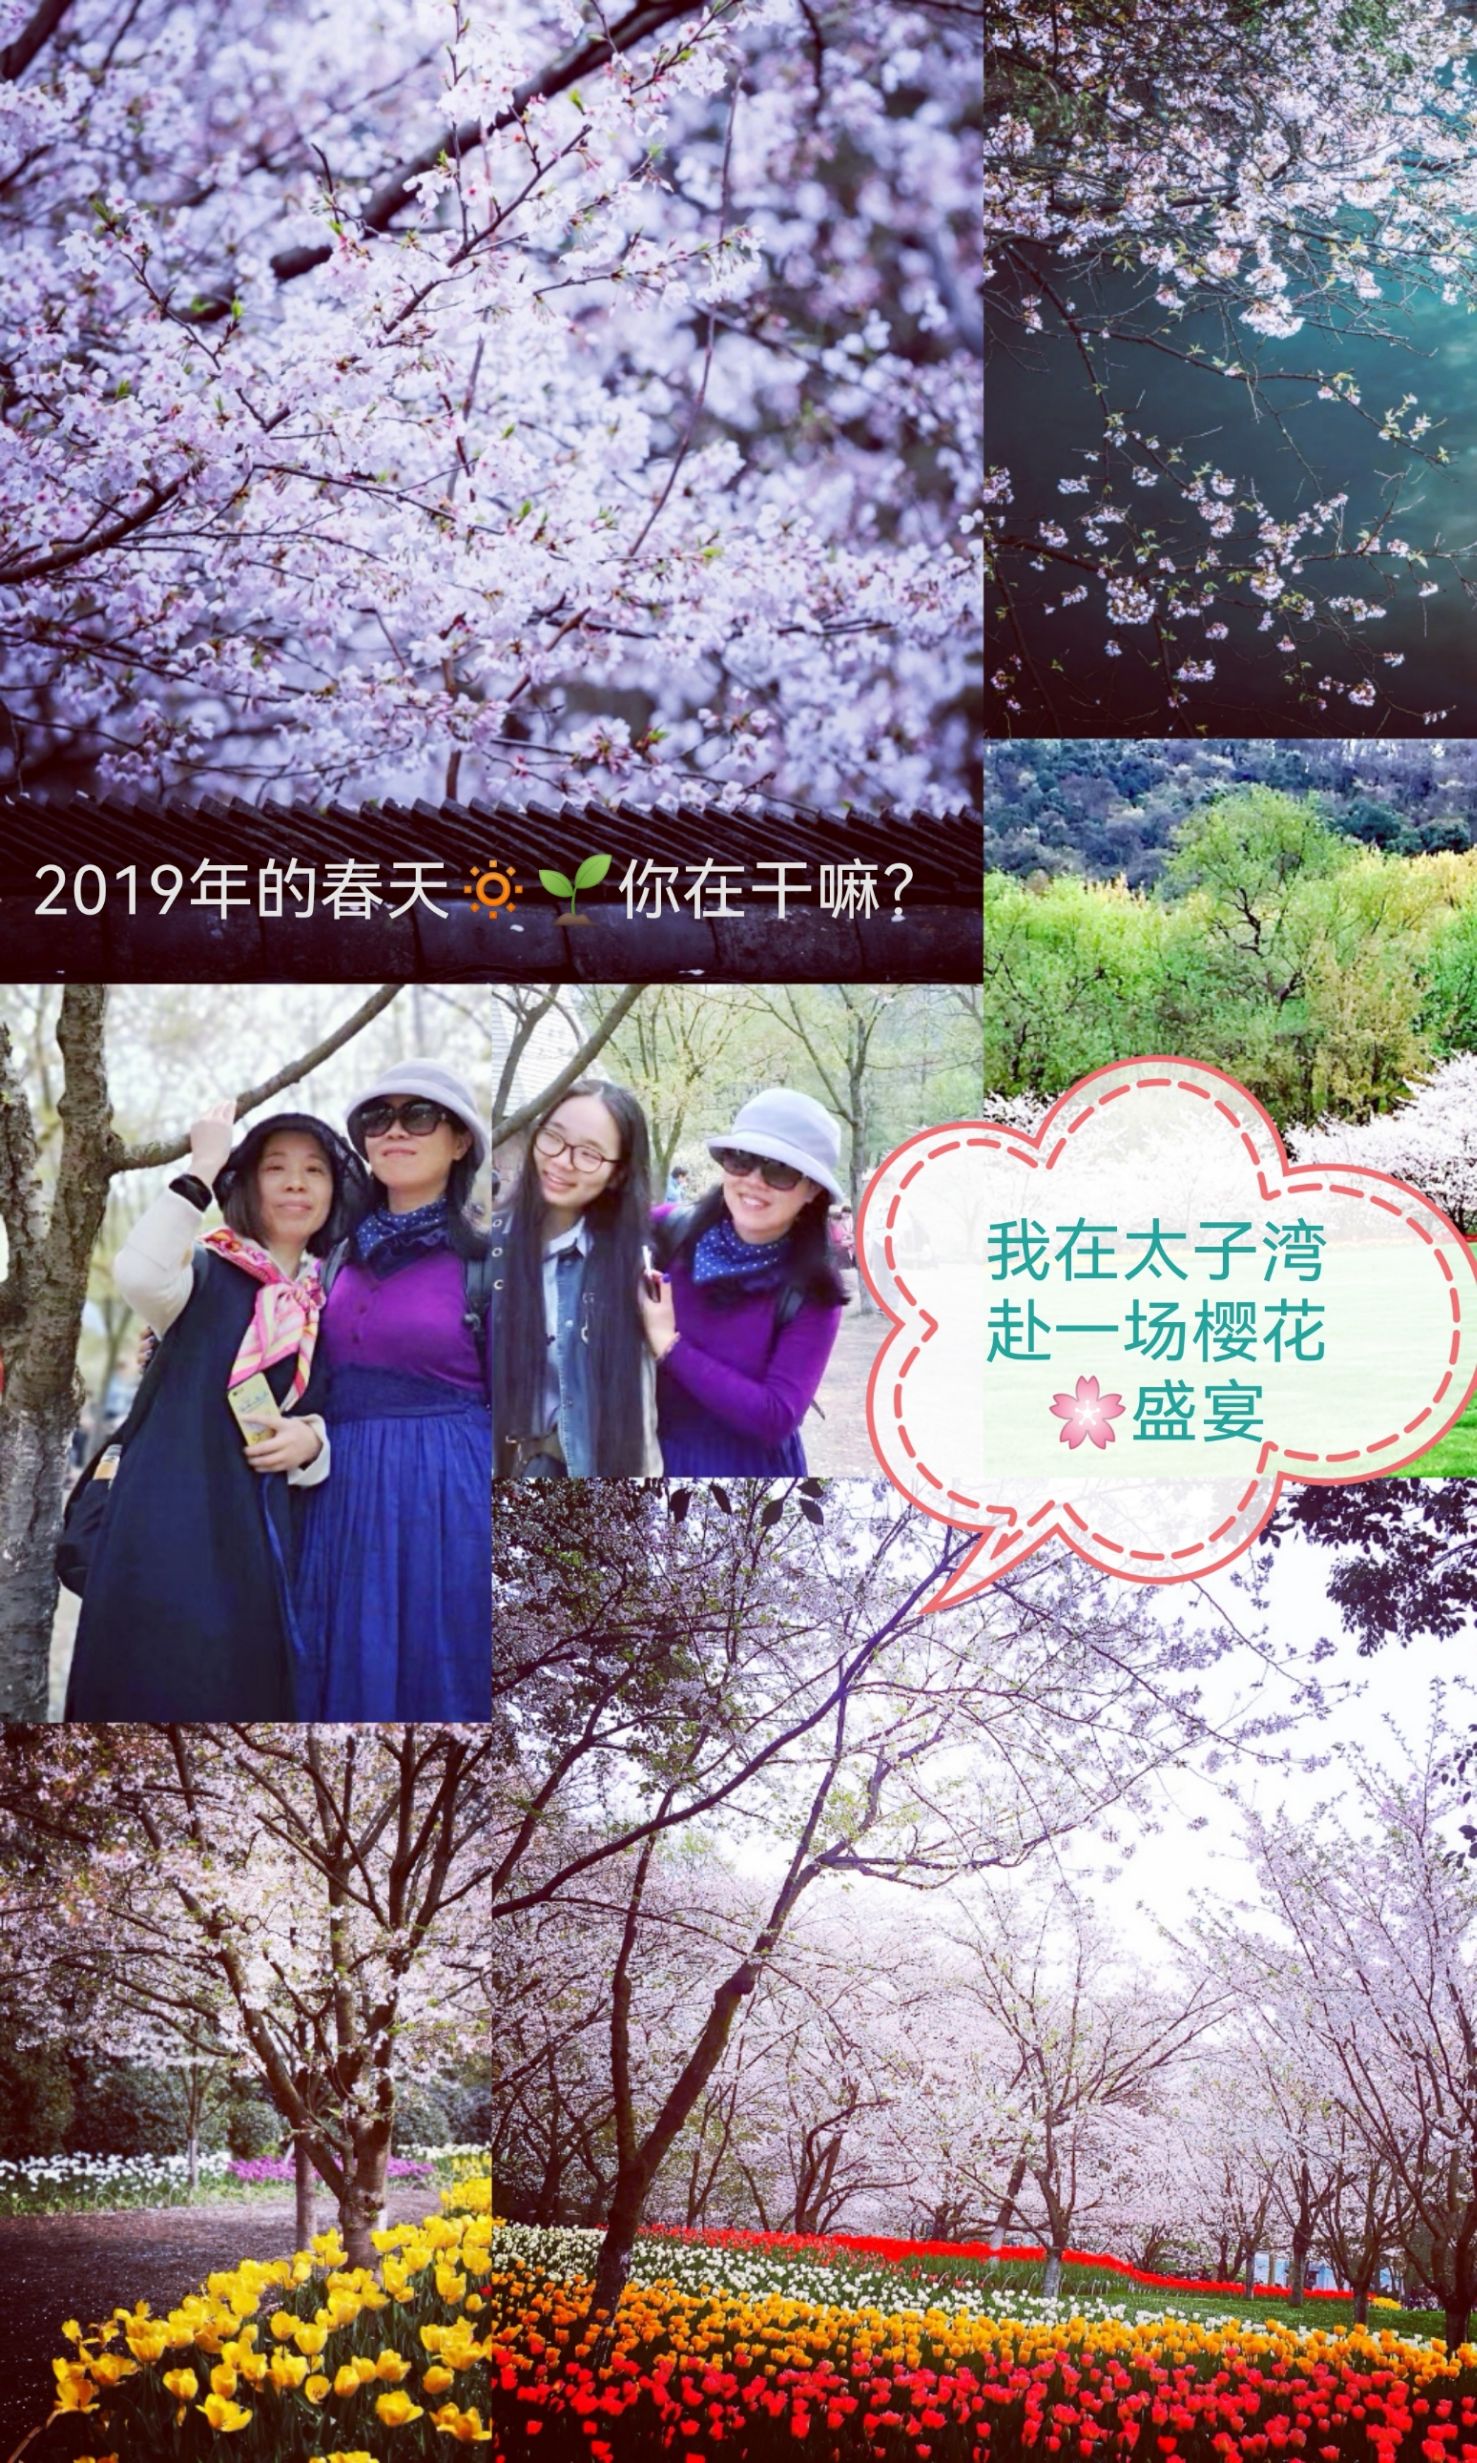 【寻芳之旅】2019春天你干嘛？我在赴一场樱花🌸盛宴